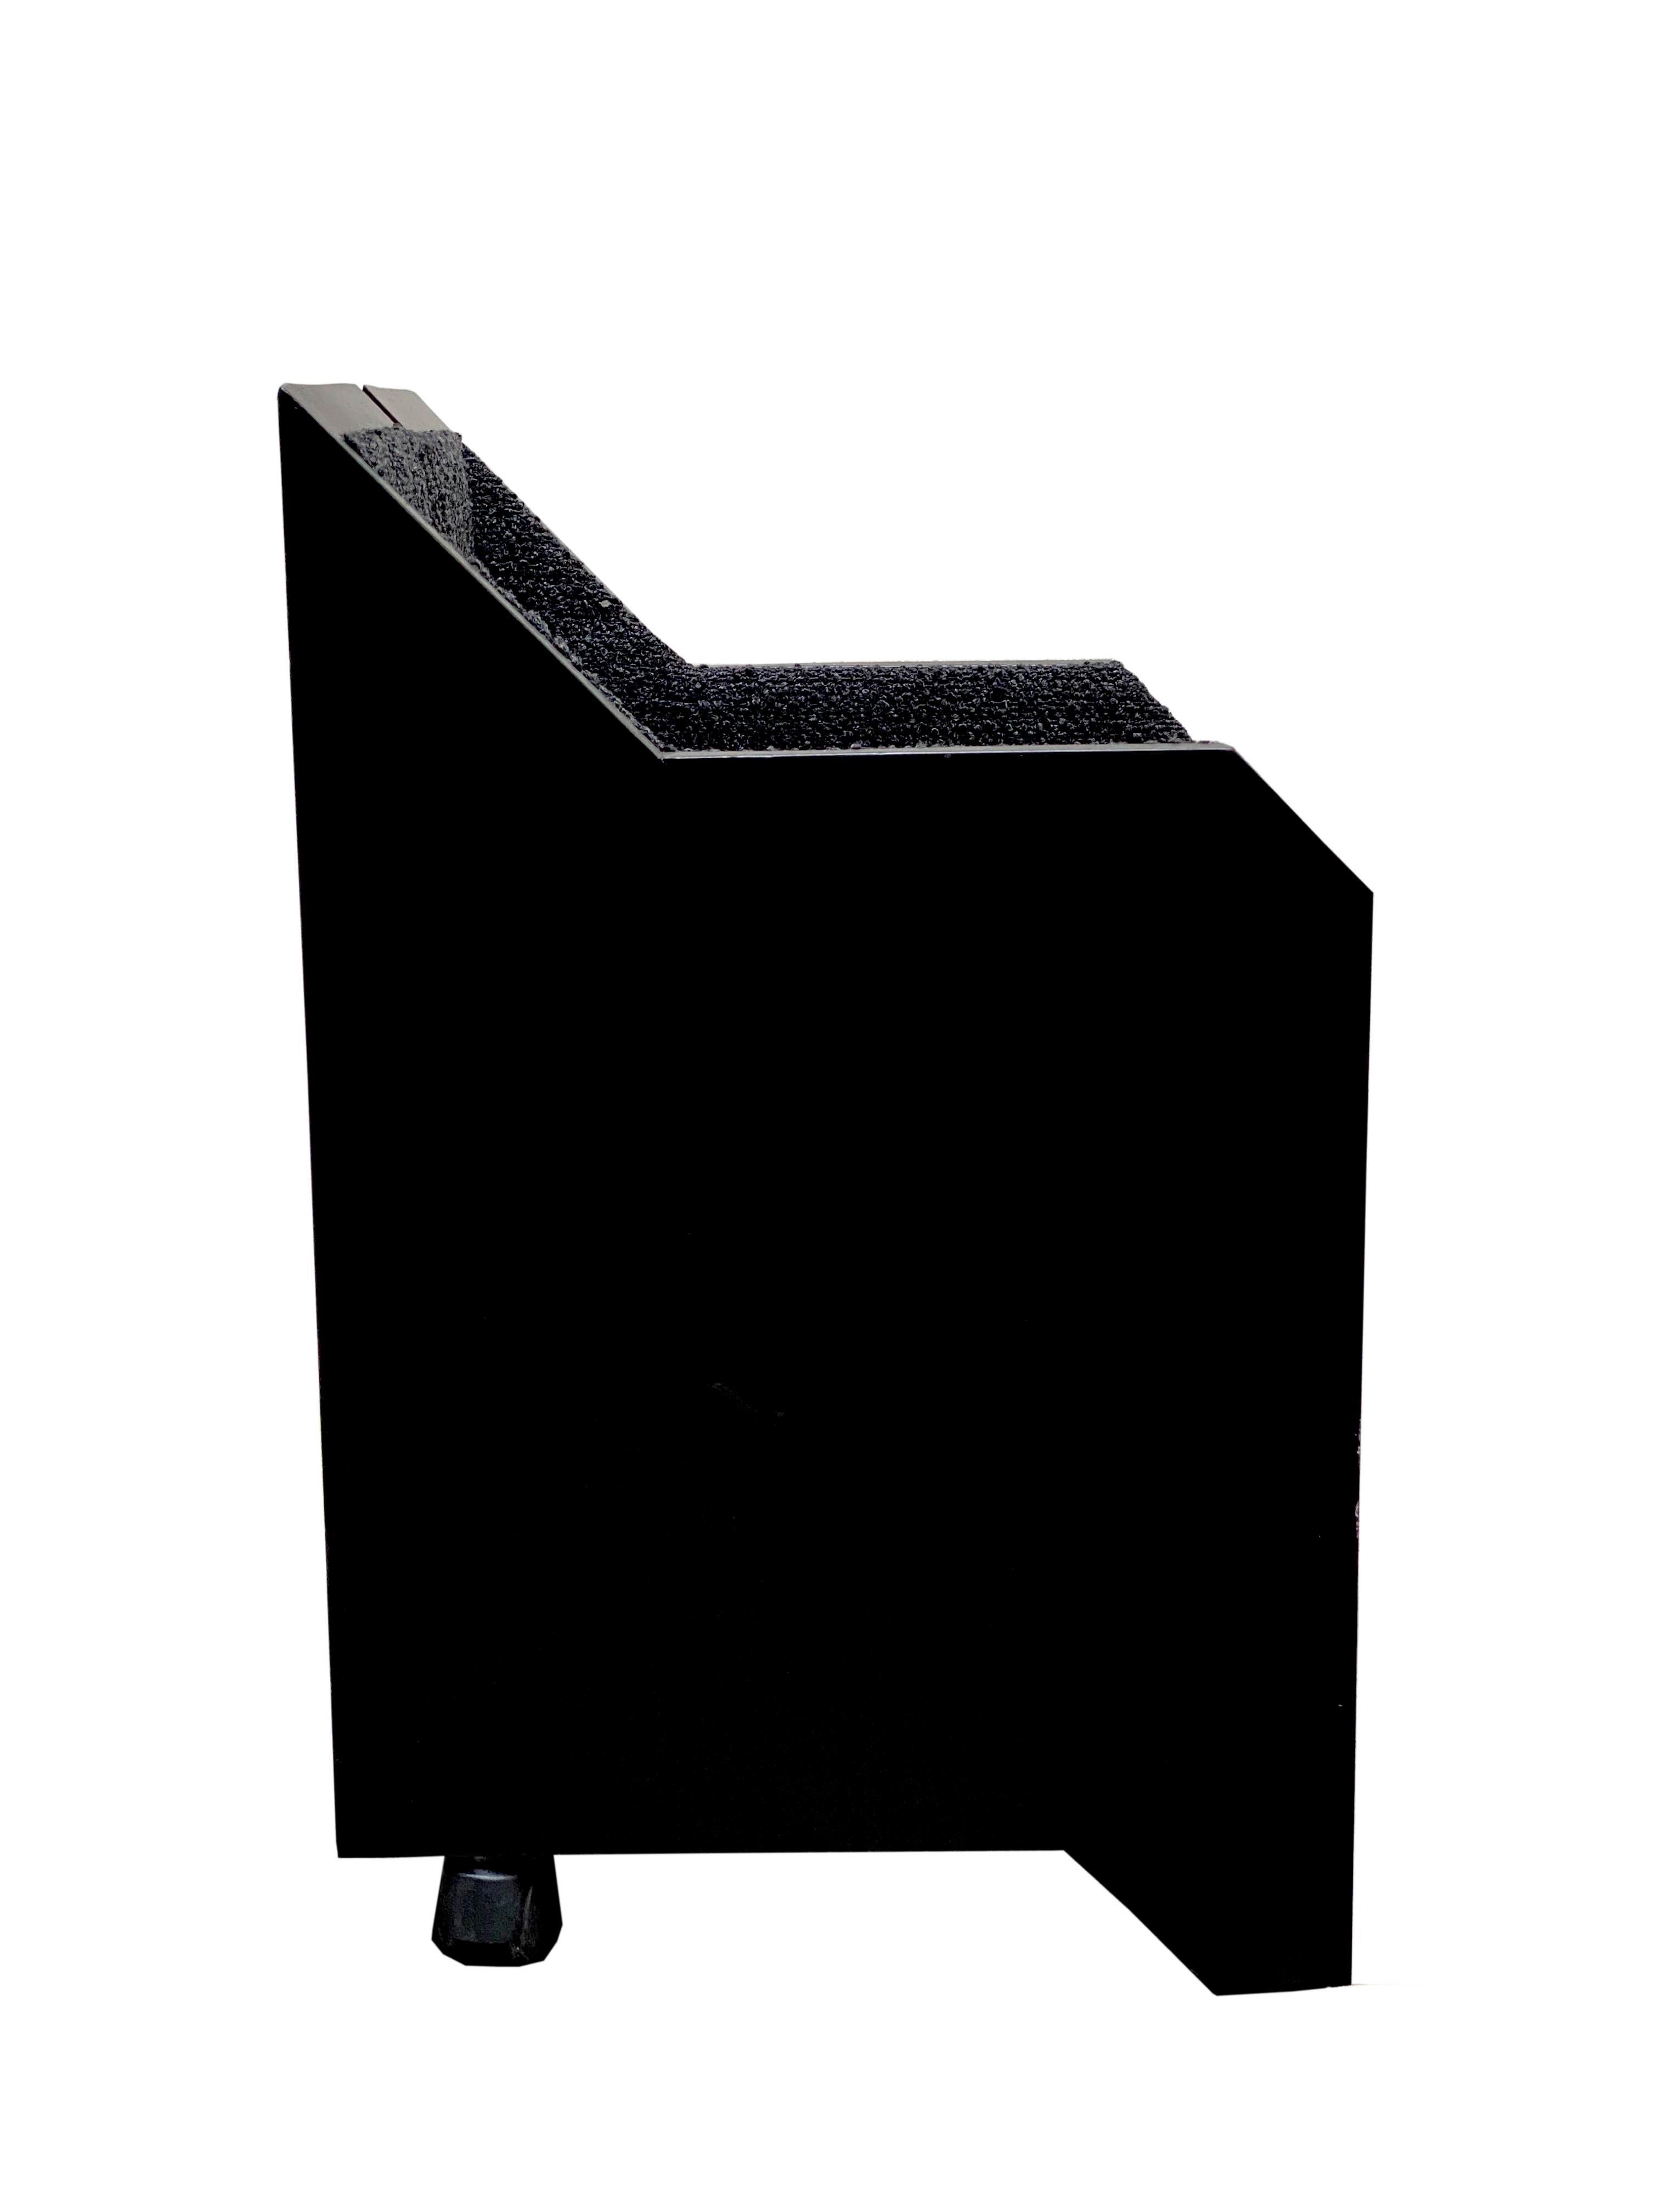 Ravissant petit fauteuil en bois teinté noir, tapissé de tissu 'boucle' gris/noir avec roulettes, design Nicola Pagliara.
Nicola Pagliara (Rome 1933 - Naples 2017) était architecte et professeur à la faculté d'architecture de l'université de Naples